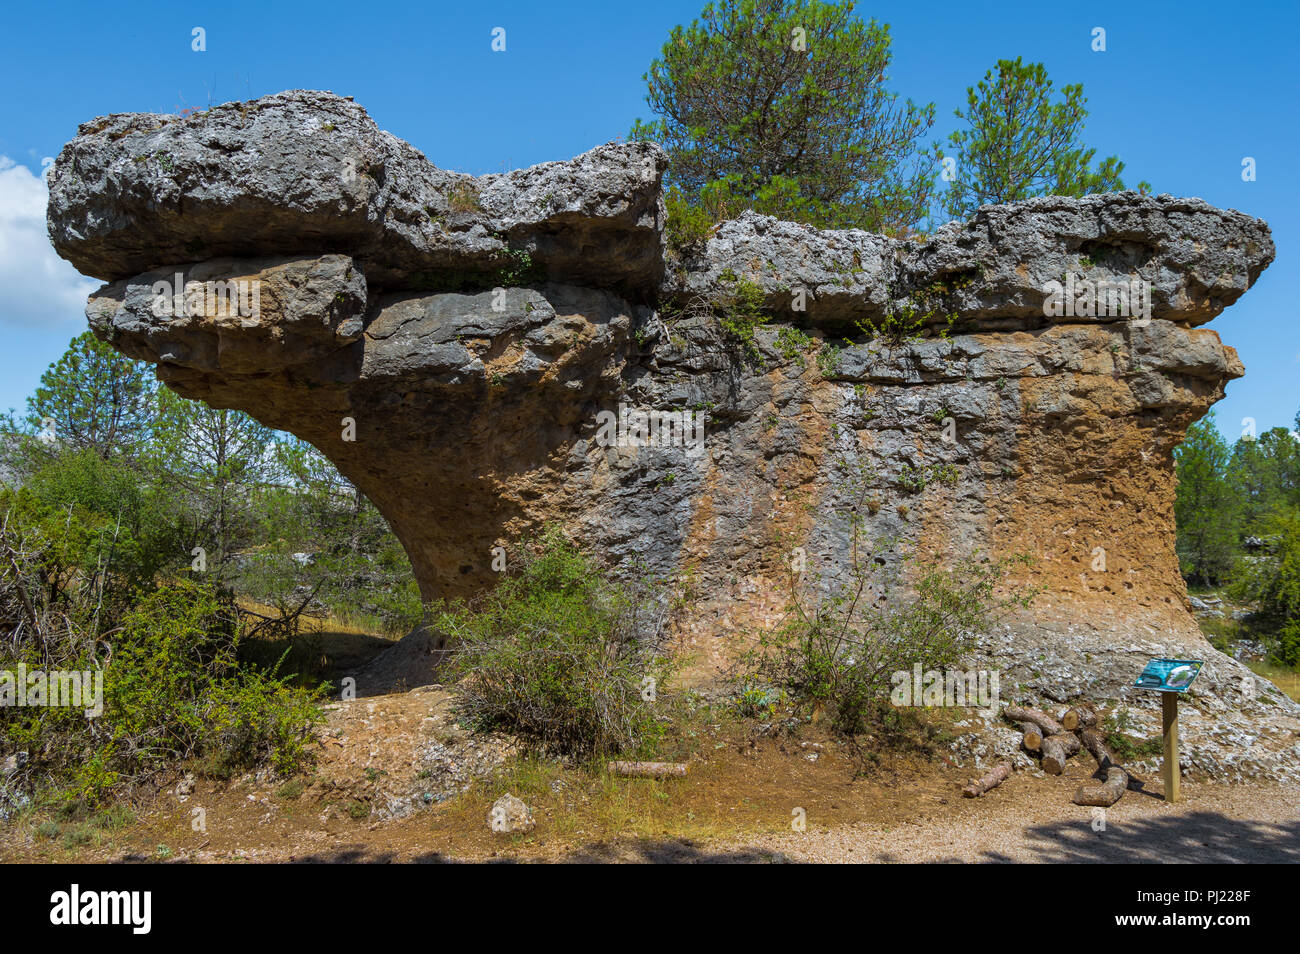 Roca de "El Perro" en la Ciudad Encantada (Ciudad Encantada) de Cuenca,  España. Lugar con formaciones rocosas similares a las formas de las cosas  formados por la erosión Fotografía de stock -